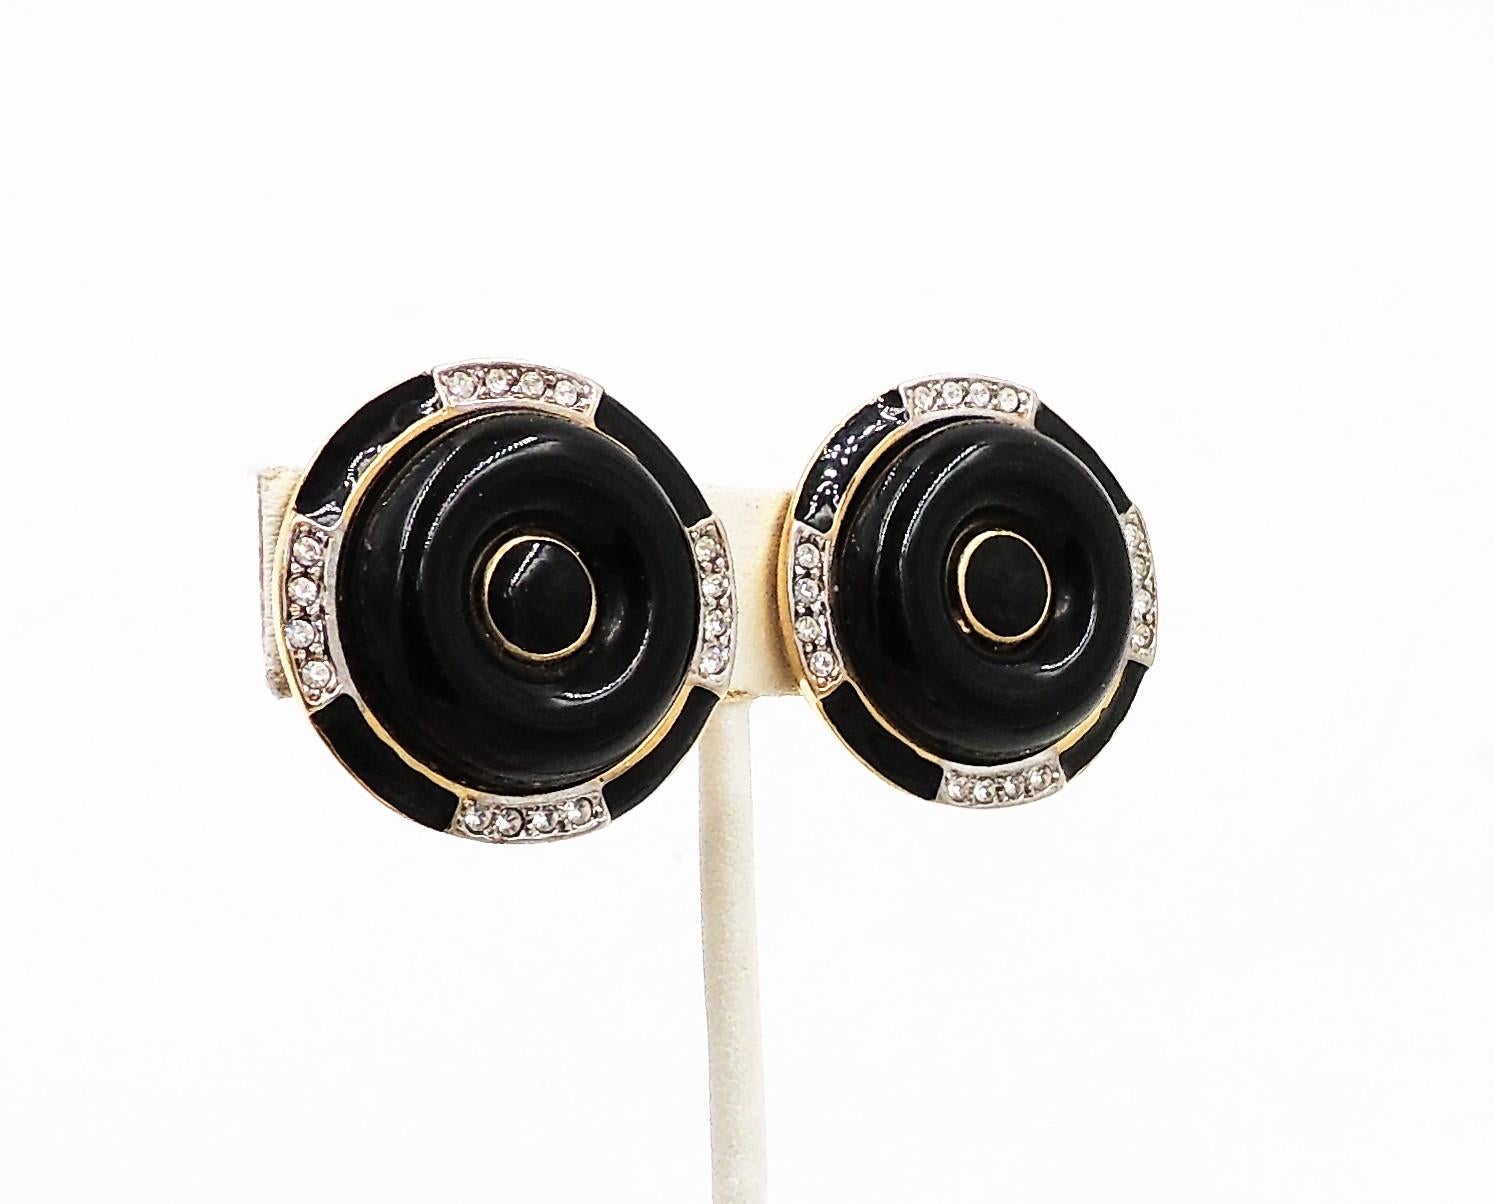 Boucles d'oreilles à clip de style art déco des années 1980, rondes et dorées, avec faux-onyx, émail noir et strass transparent. Marqué 